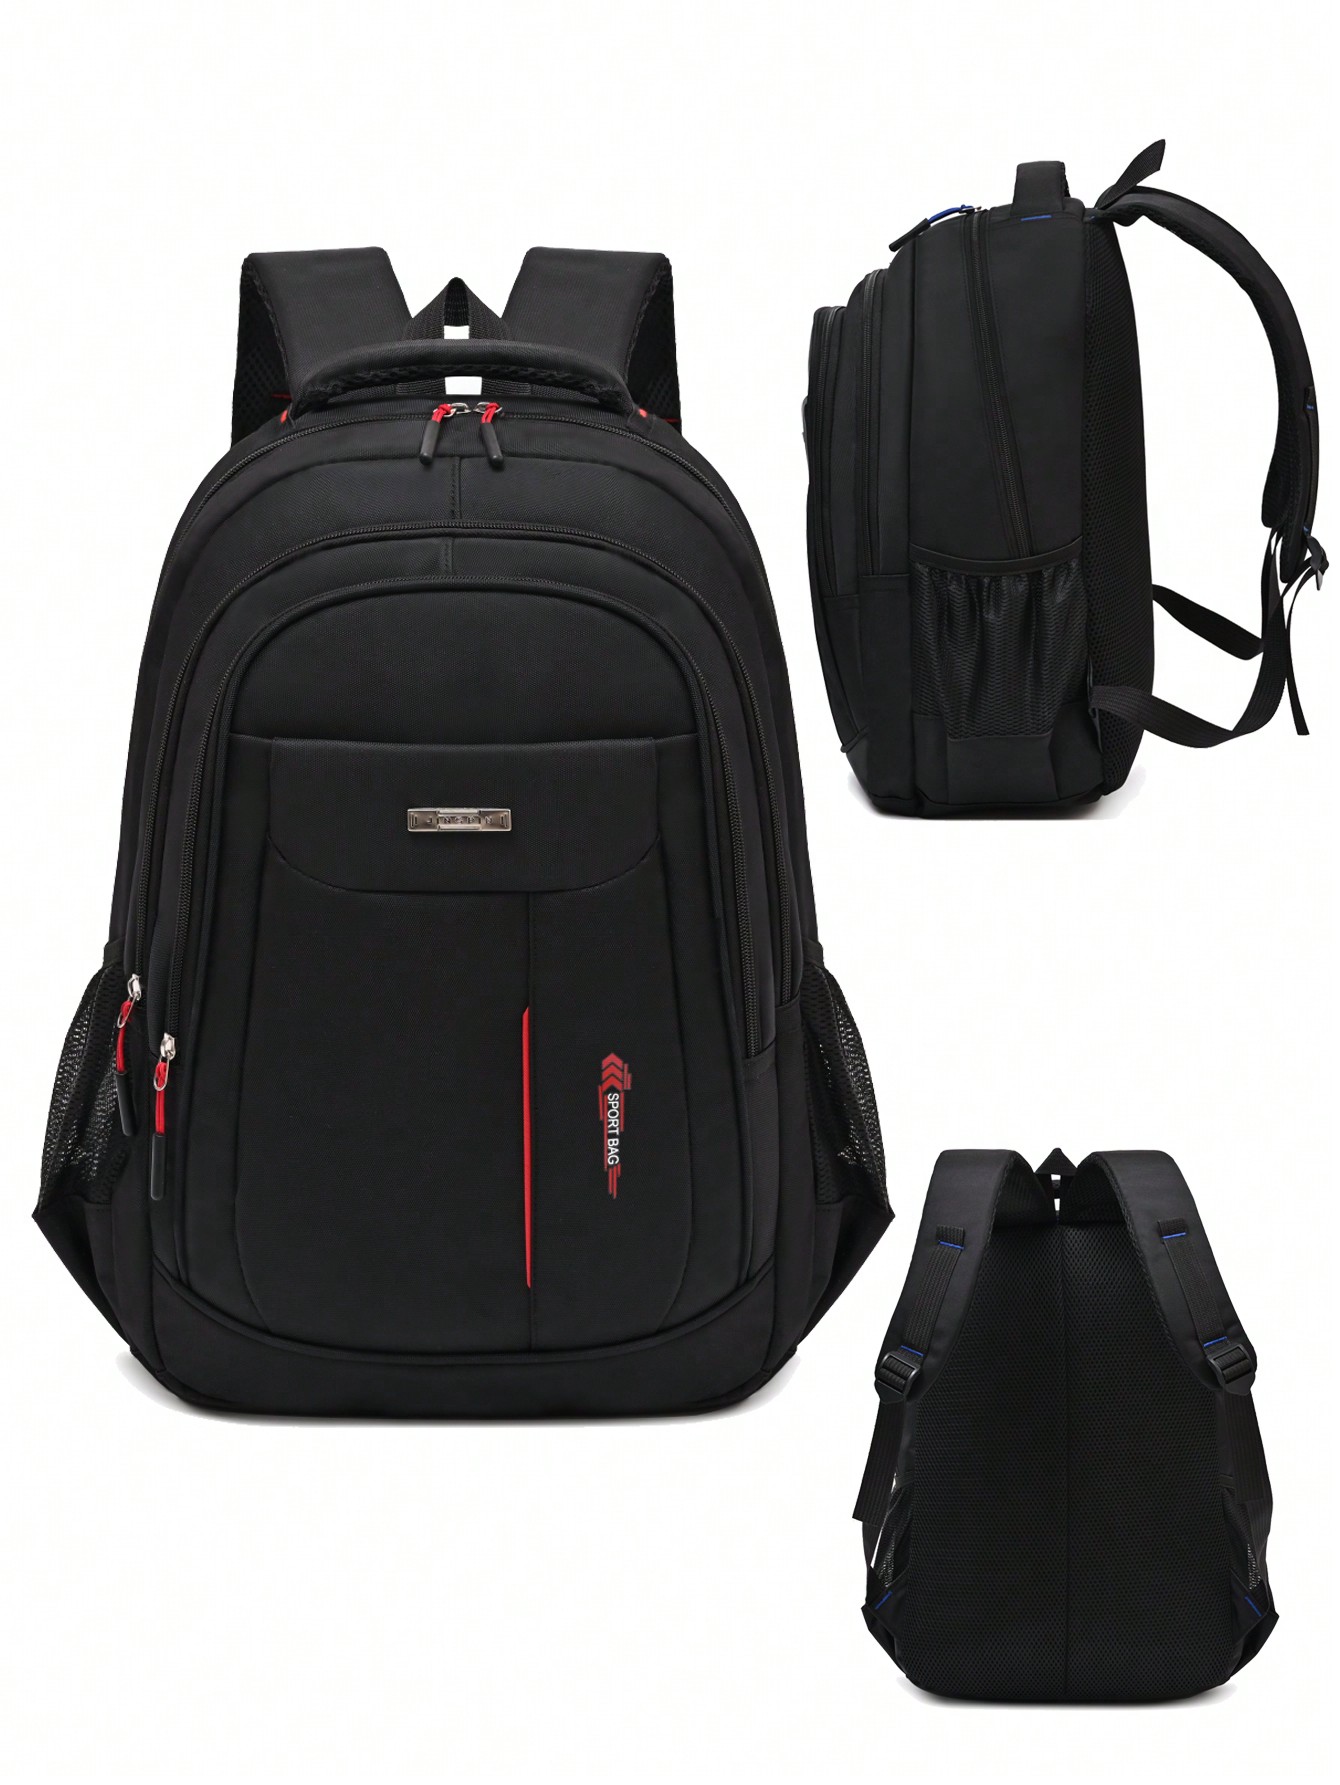 Усиленная водонепроницаемая сумка большой вместимости, красный новый мужской рюкзак компьютерные сумки школьная студенческая сумка для студентов колледжа вместительная повседневная дорожная сумка д